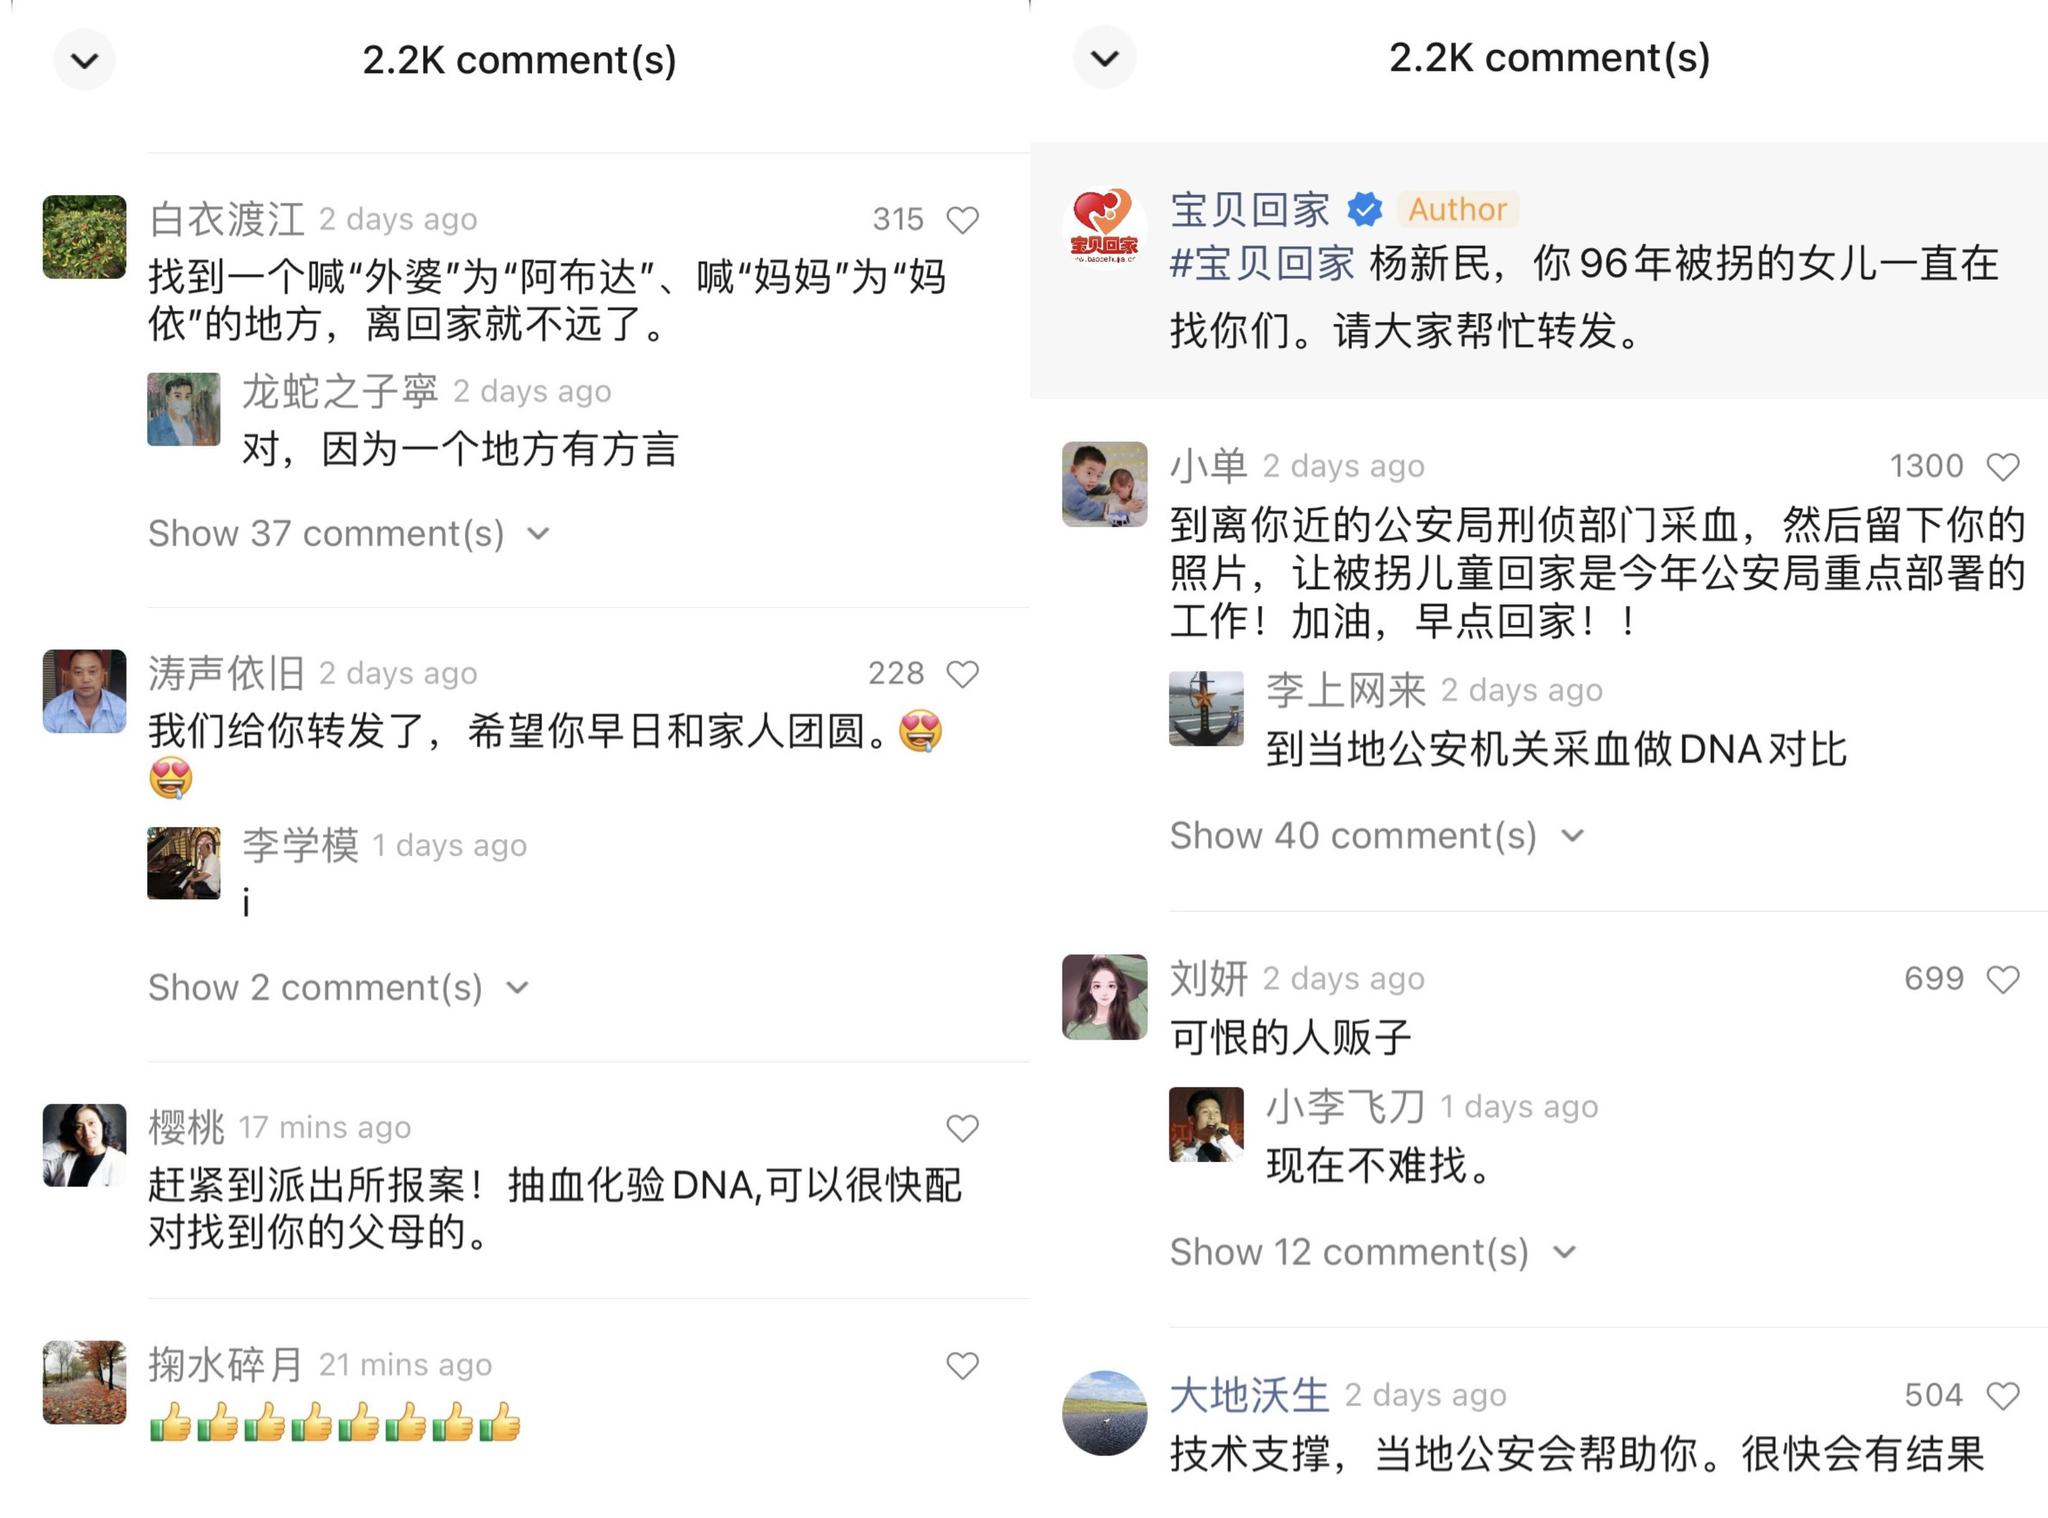 李素燕的寻亲视频引起网友热议。网页截图